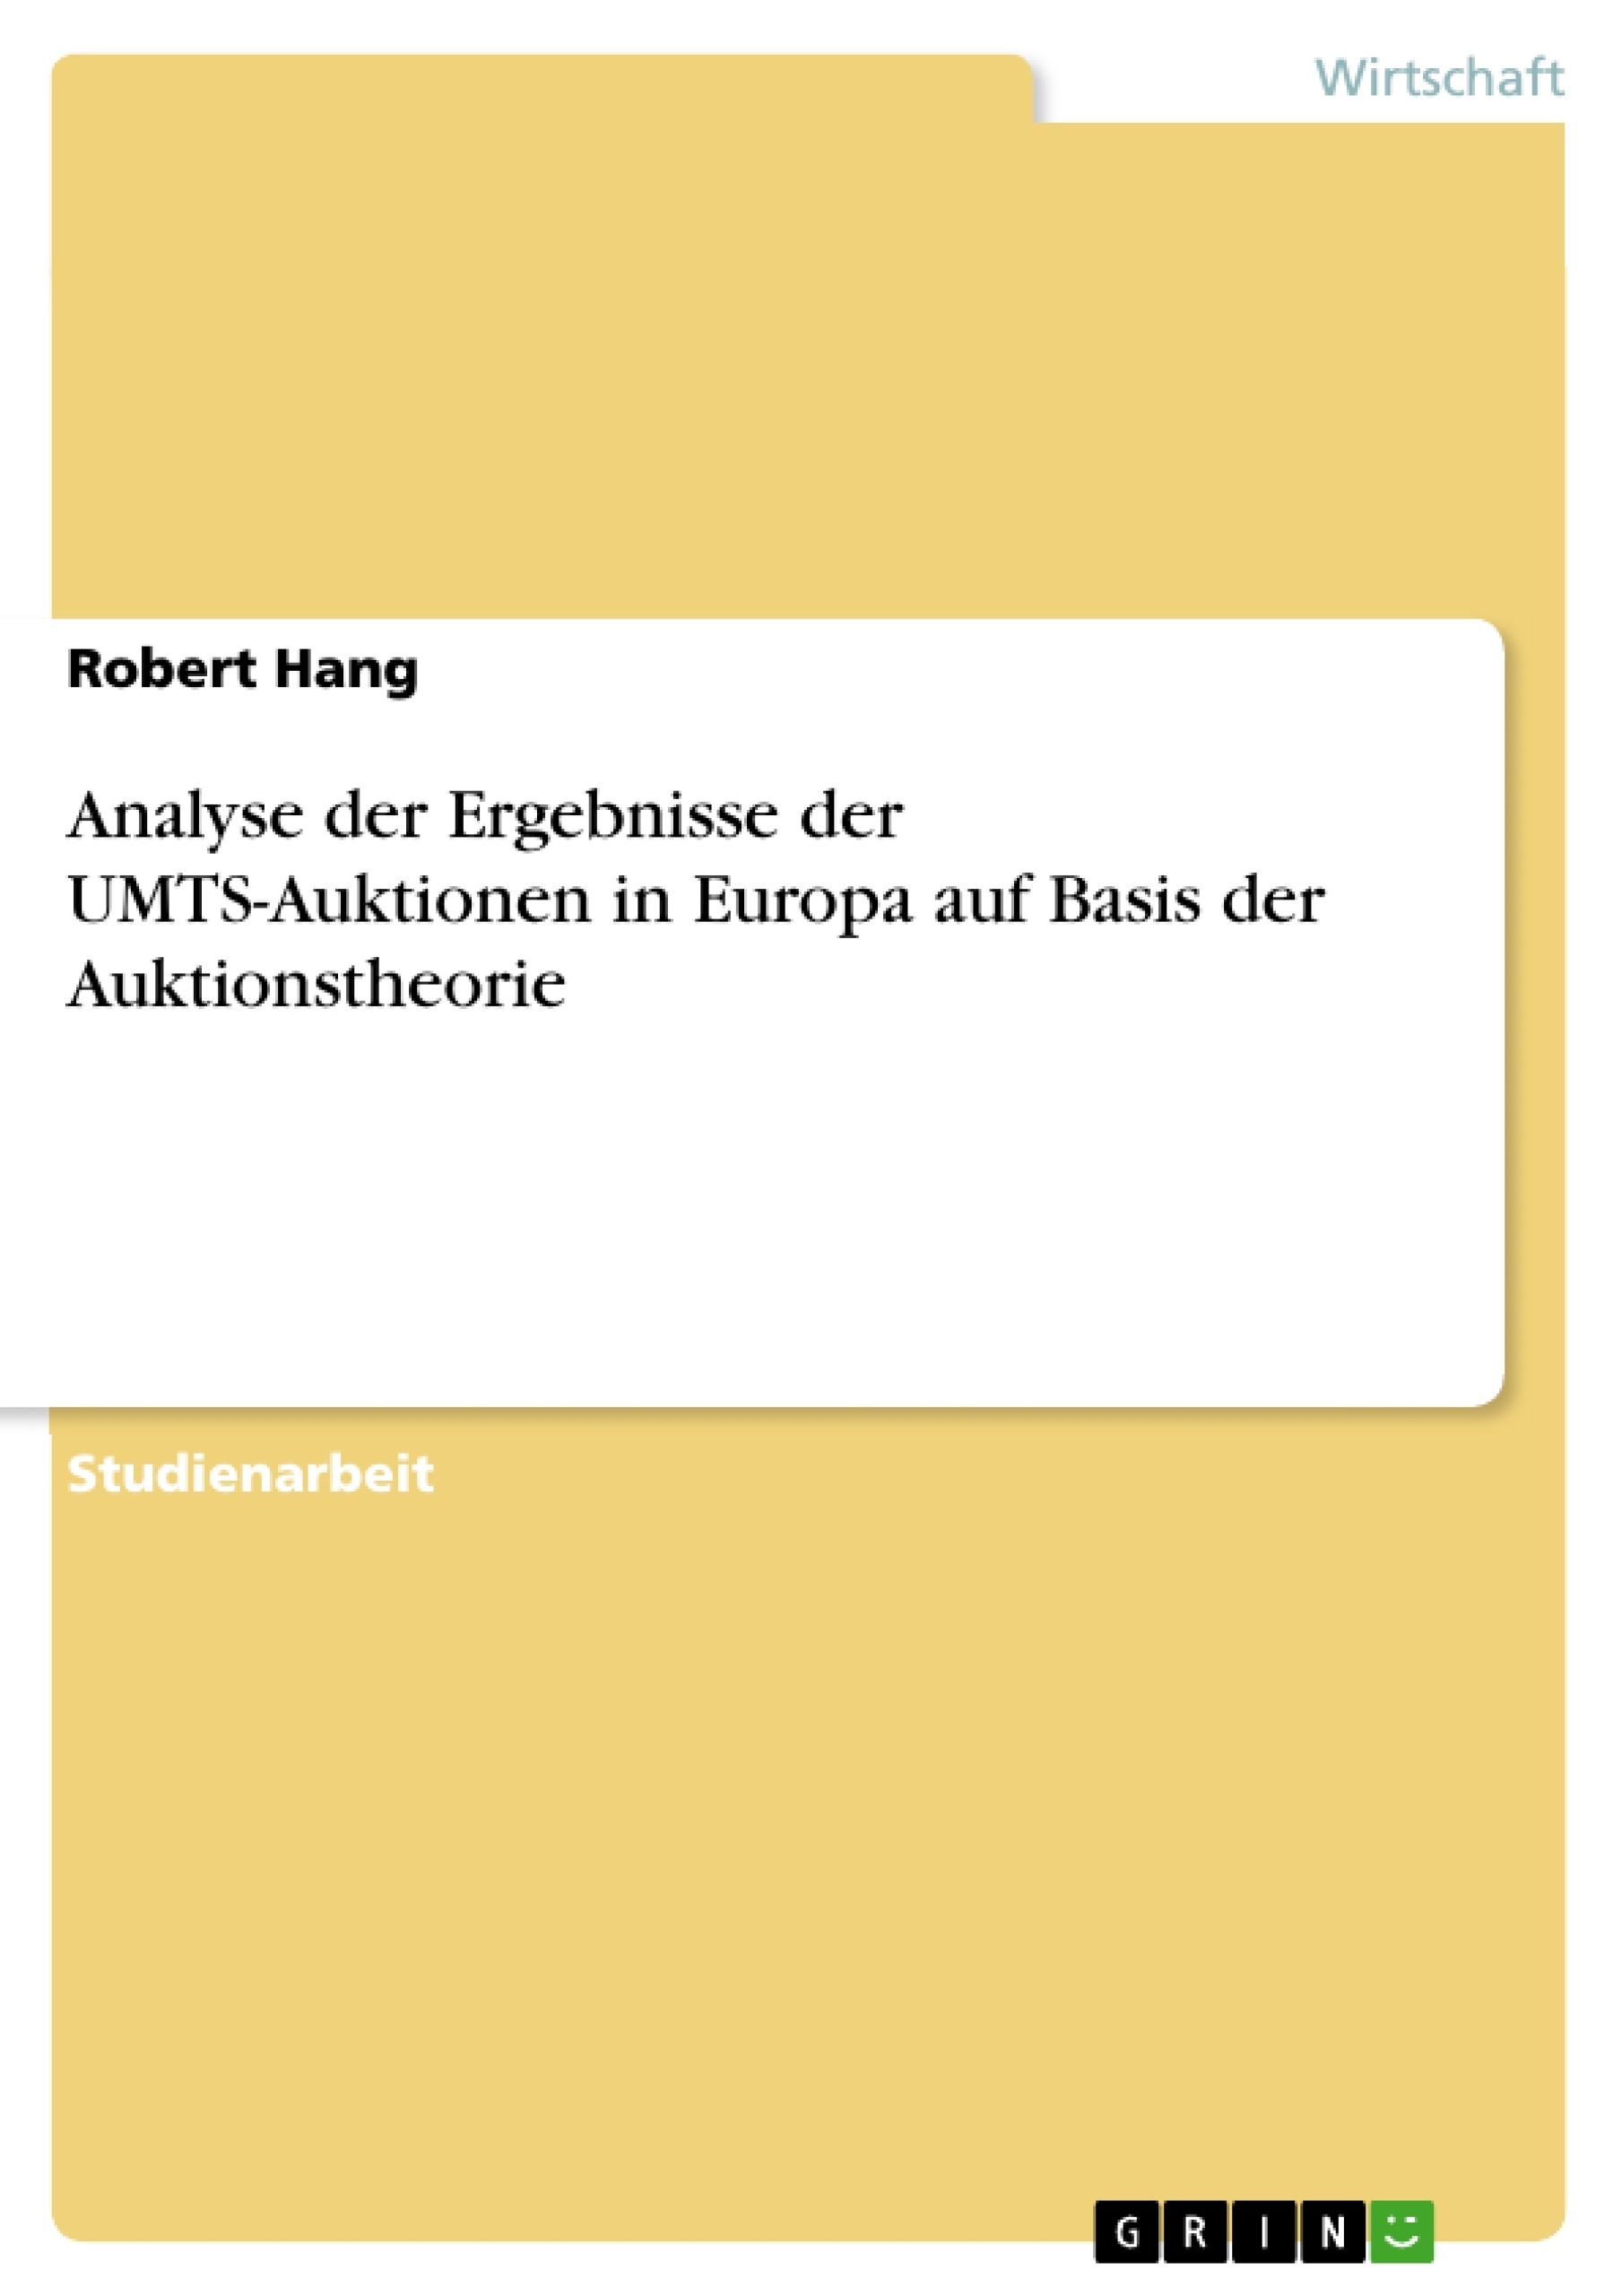 Título: Analyse der Ergebnisse der UMTS-Auktionen in Europa auf Basis der Auktionstheorie